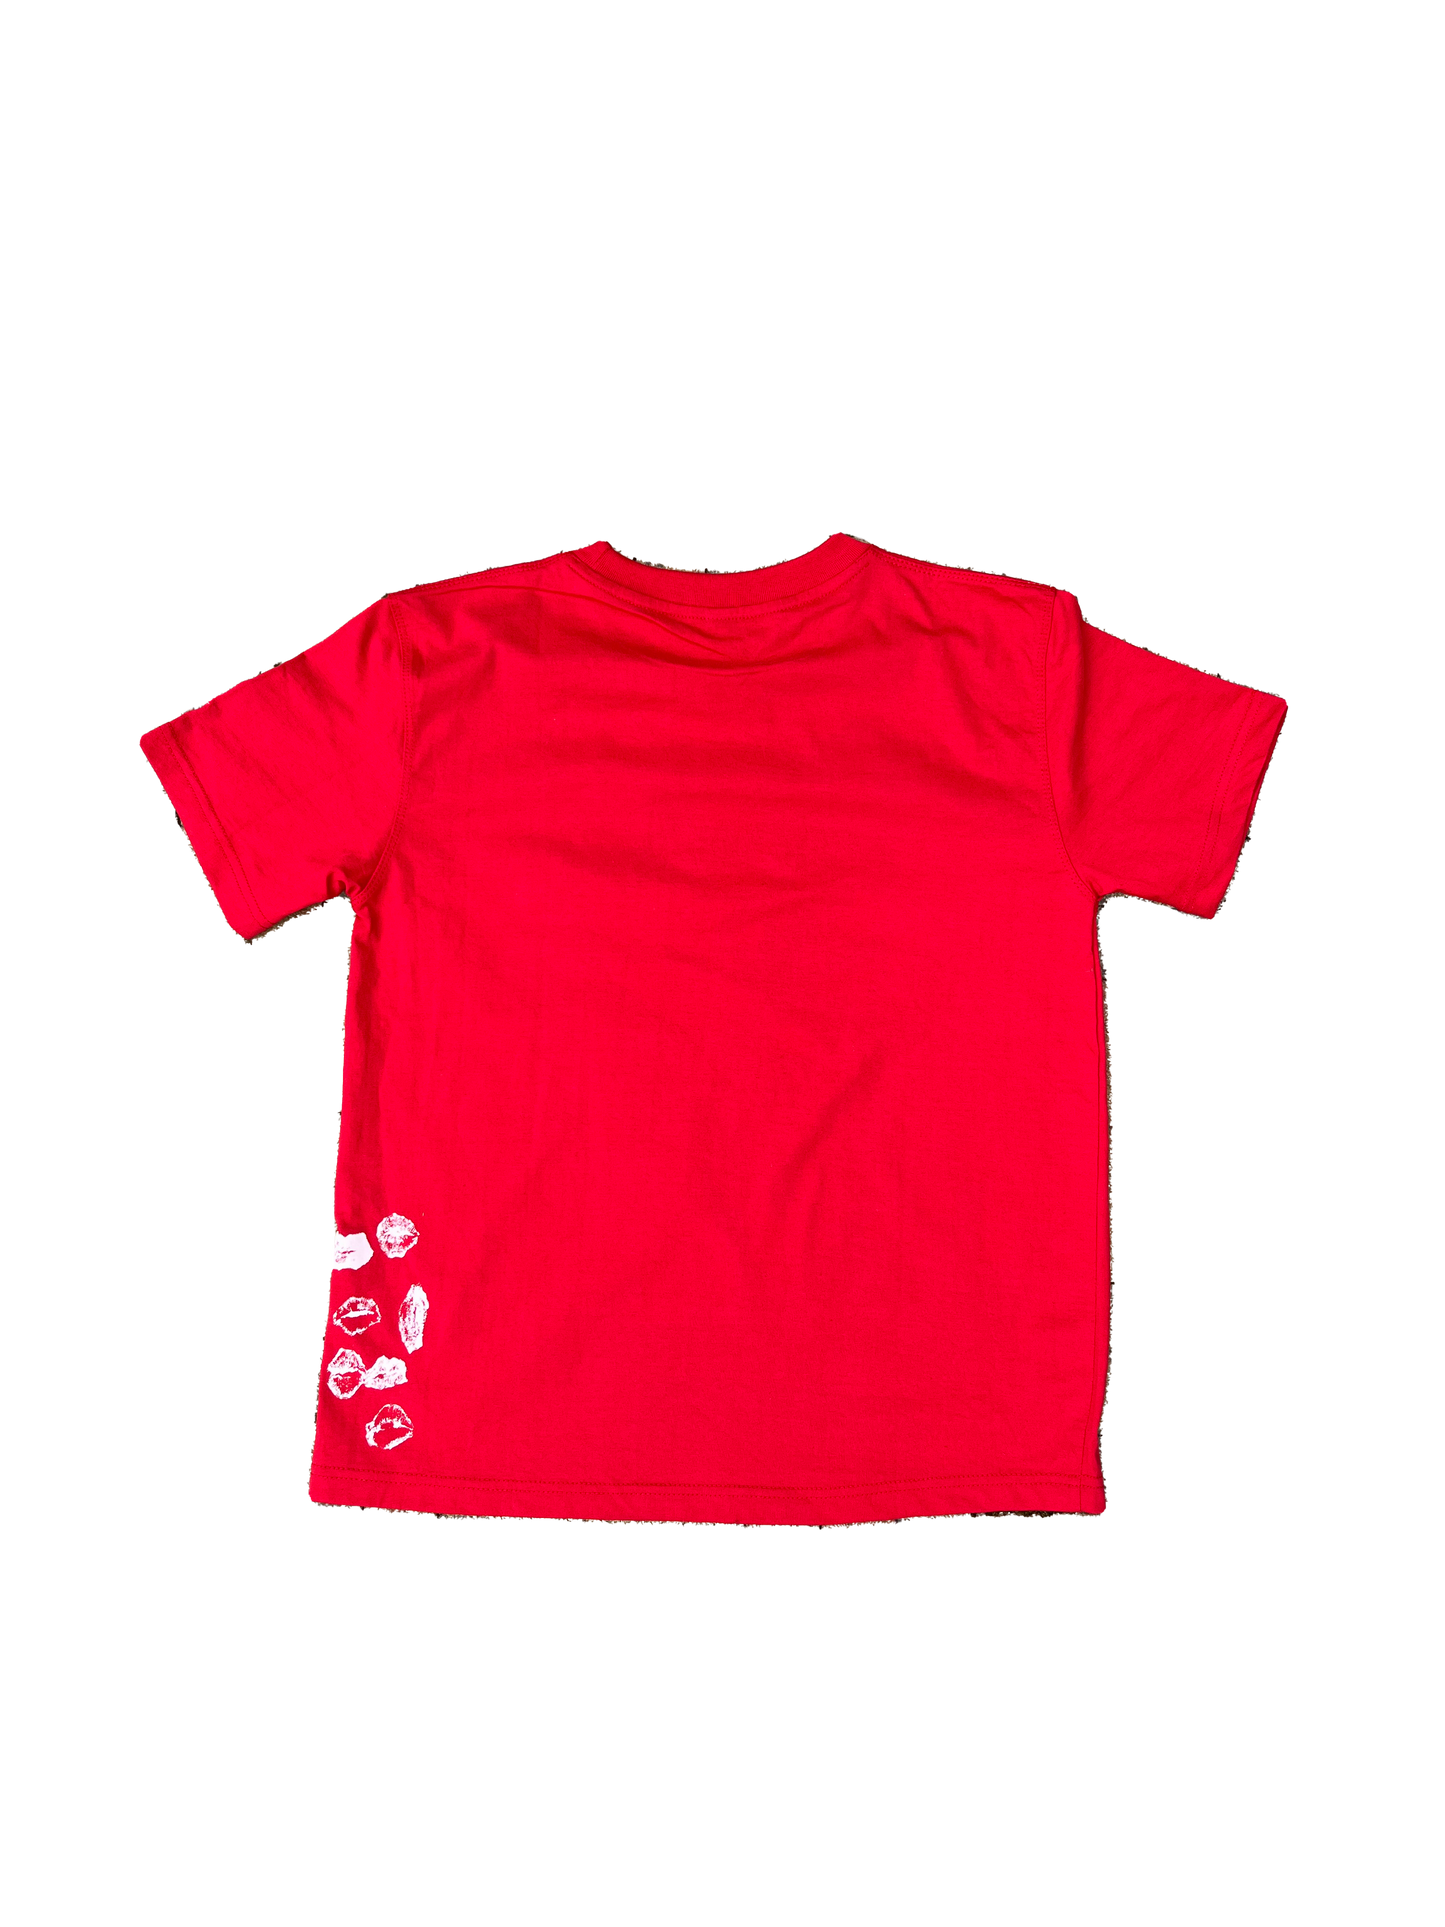 GRÁ V2 T-Shirt